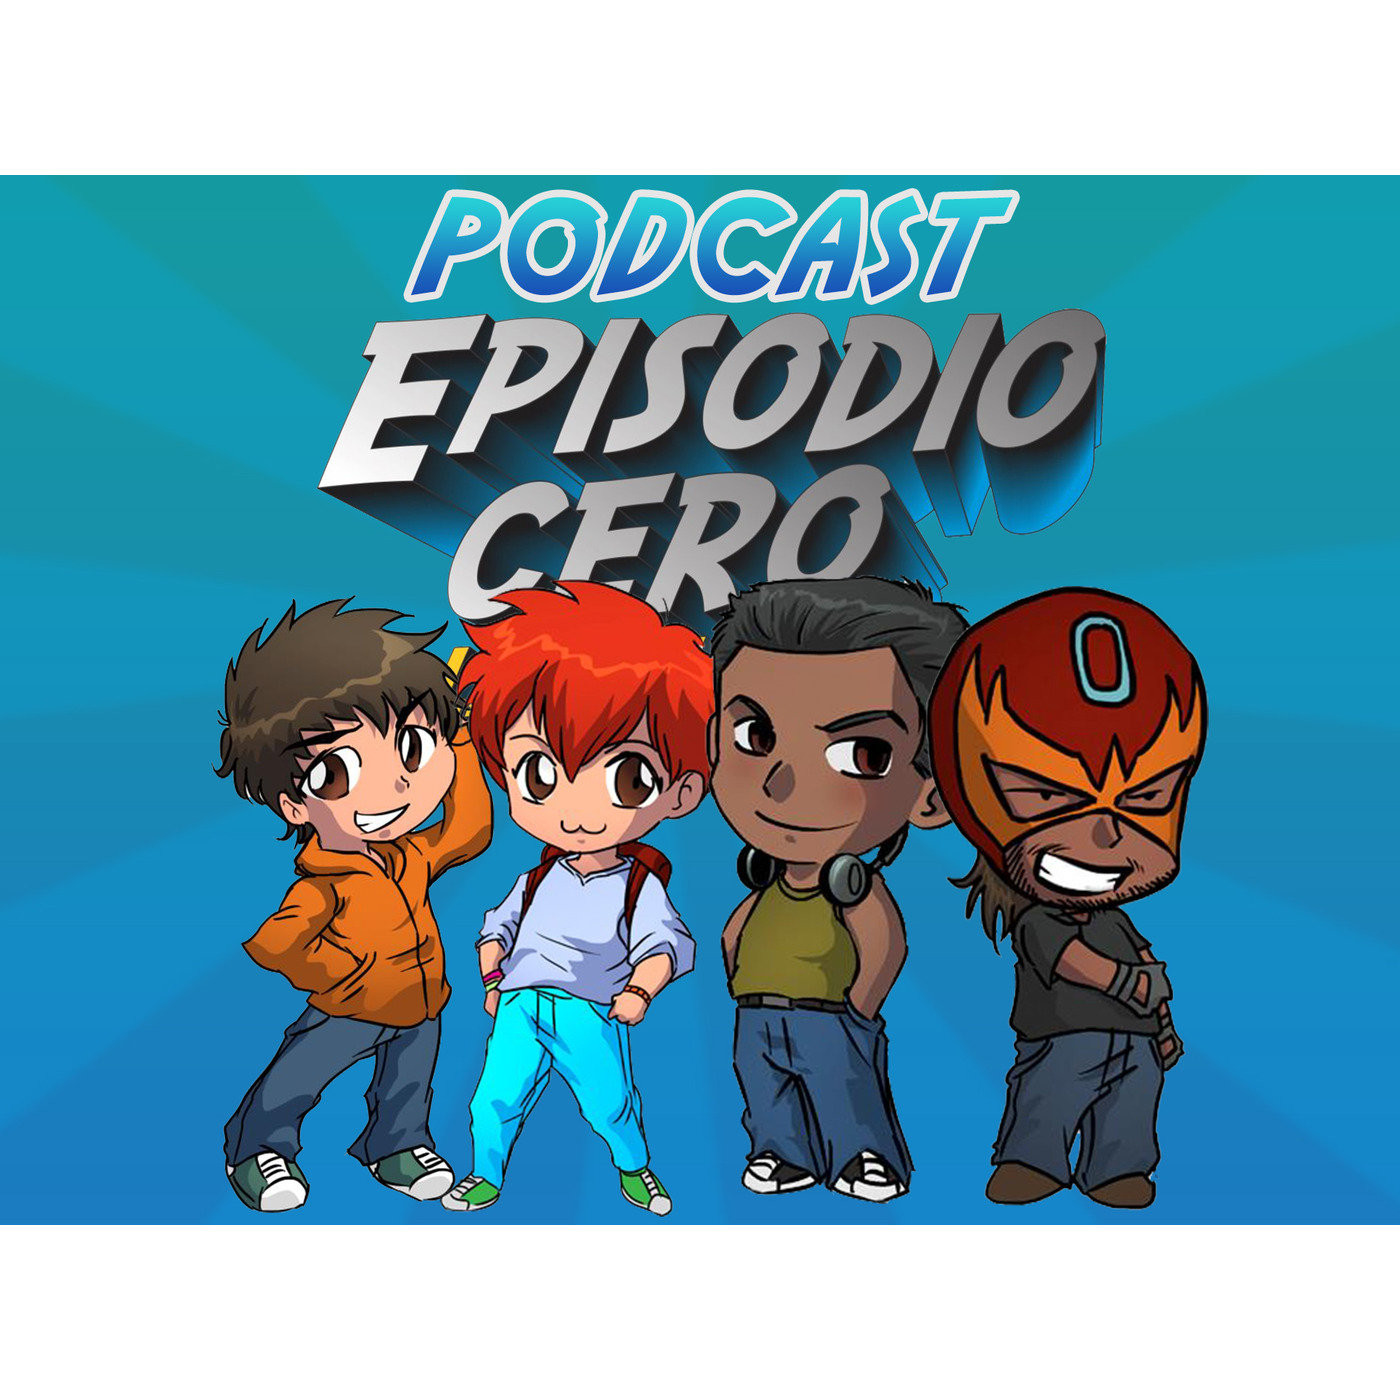 Podcast de episodio cero